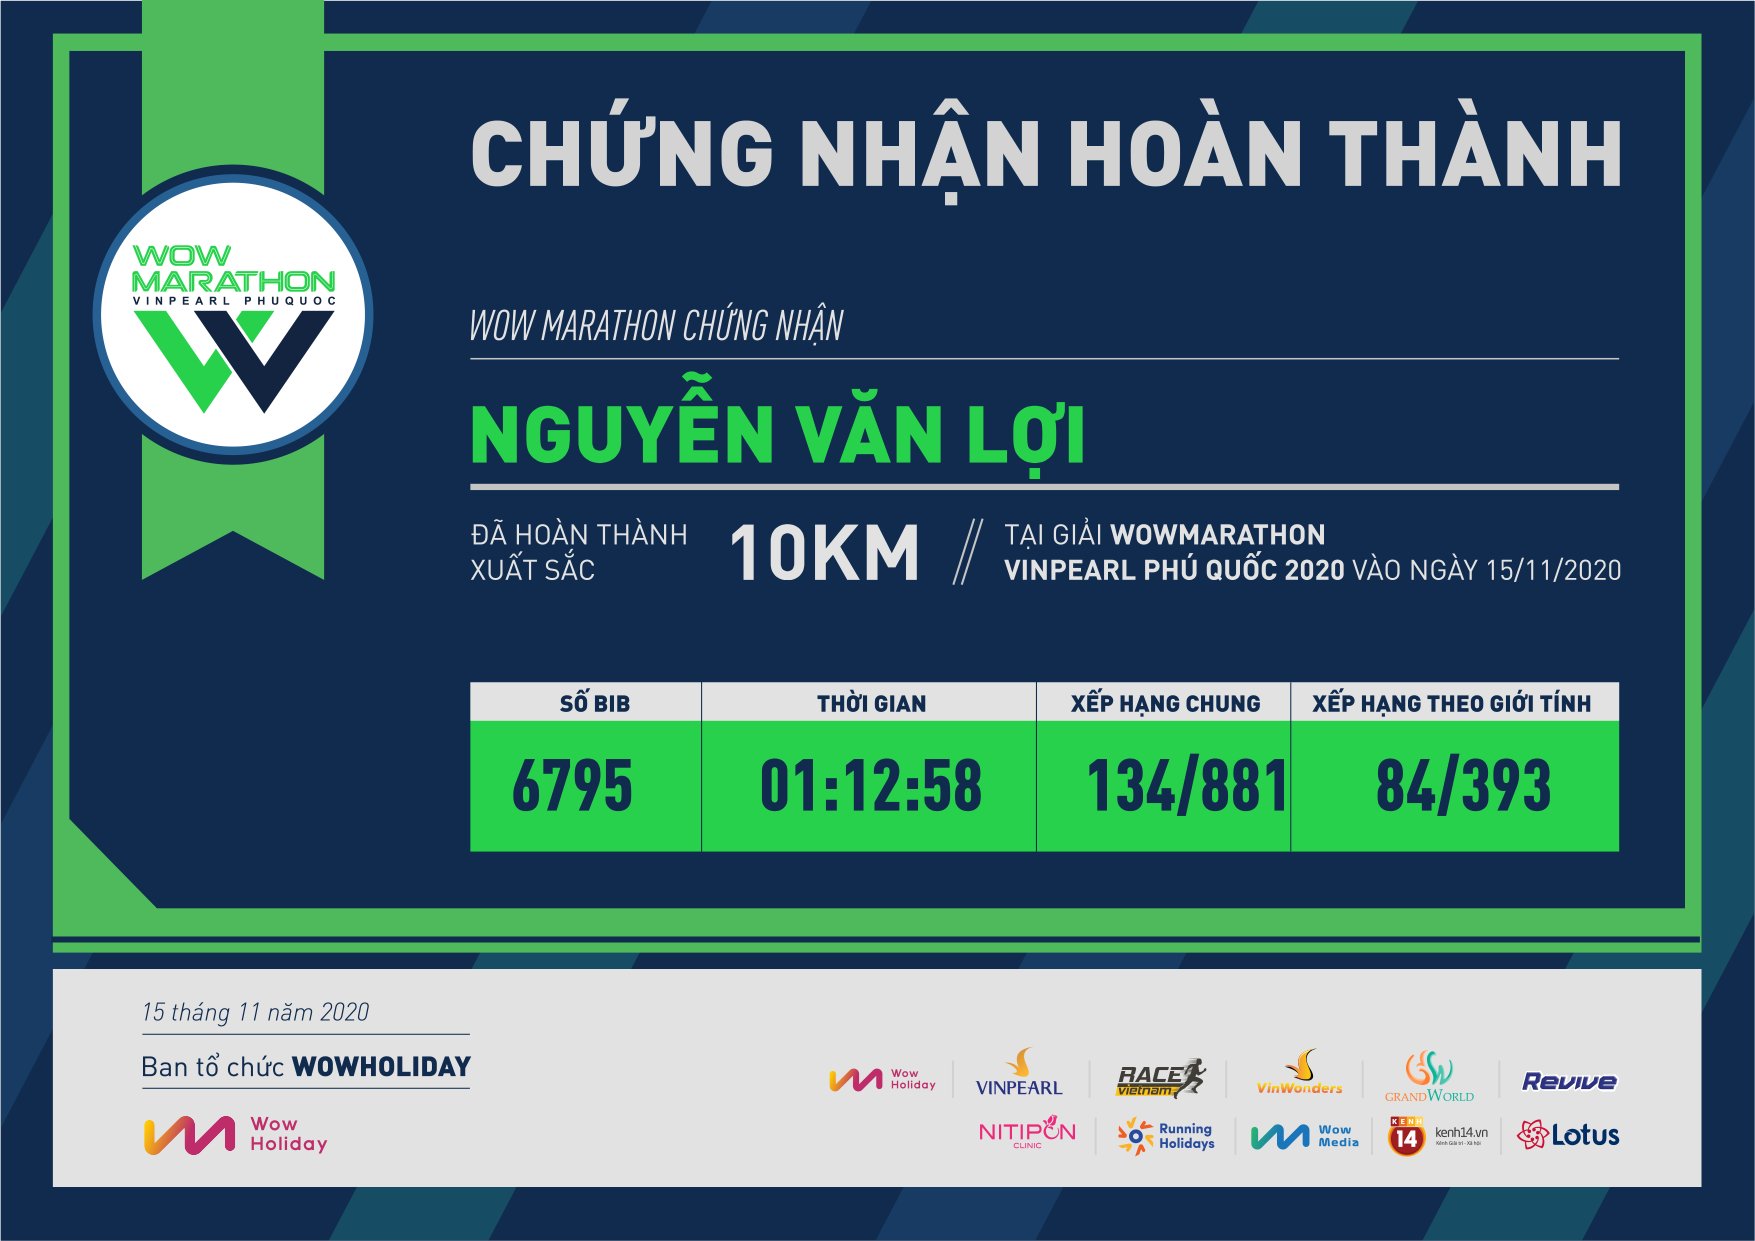 6795 - Nguyễn Văn Lợi